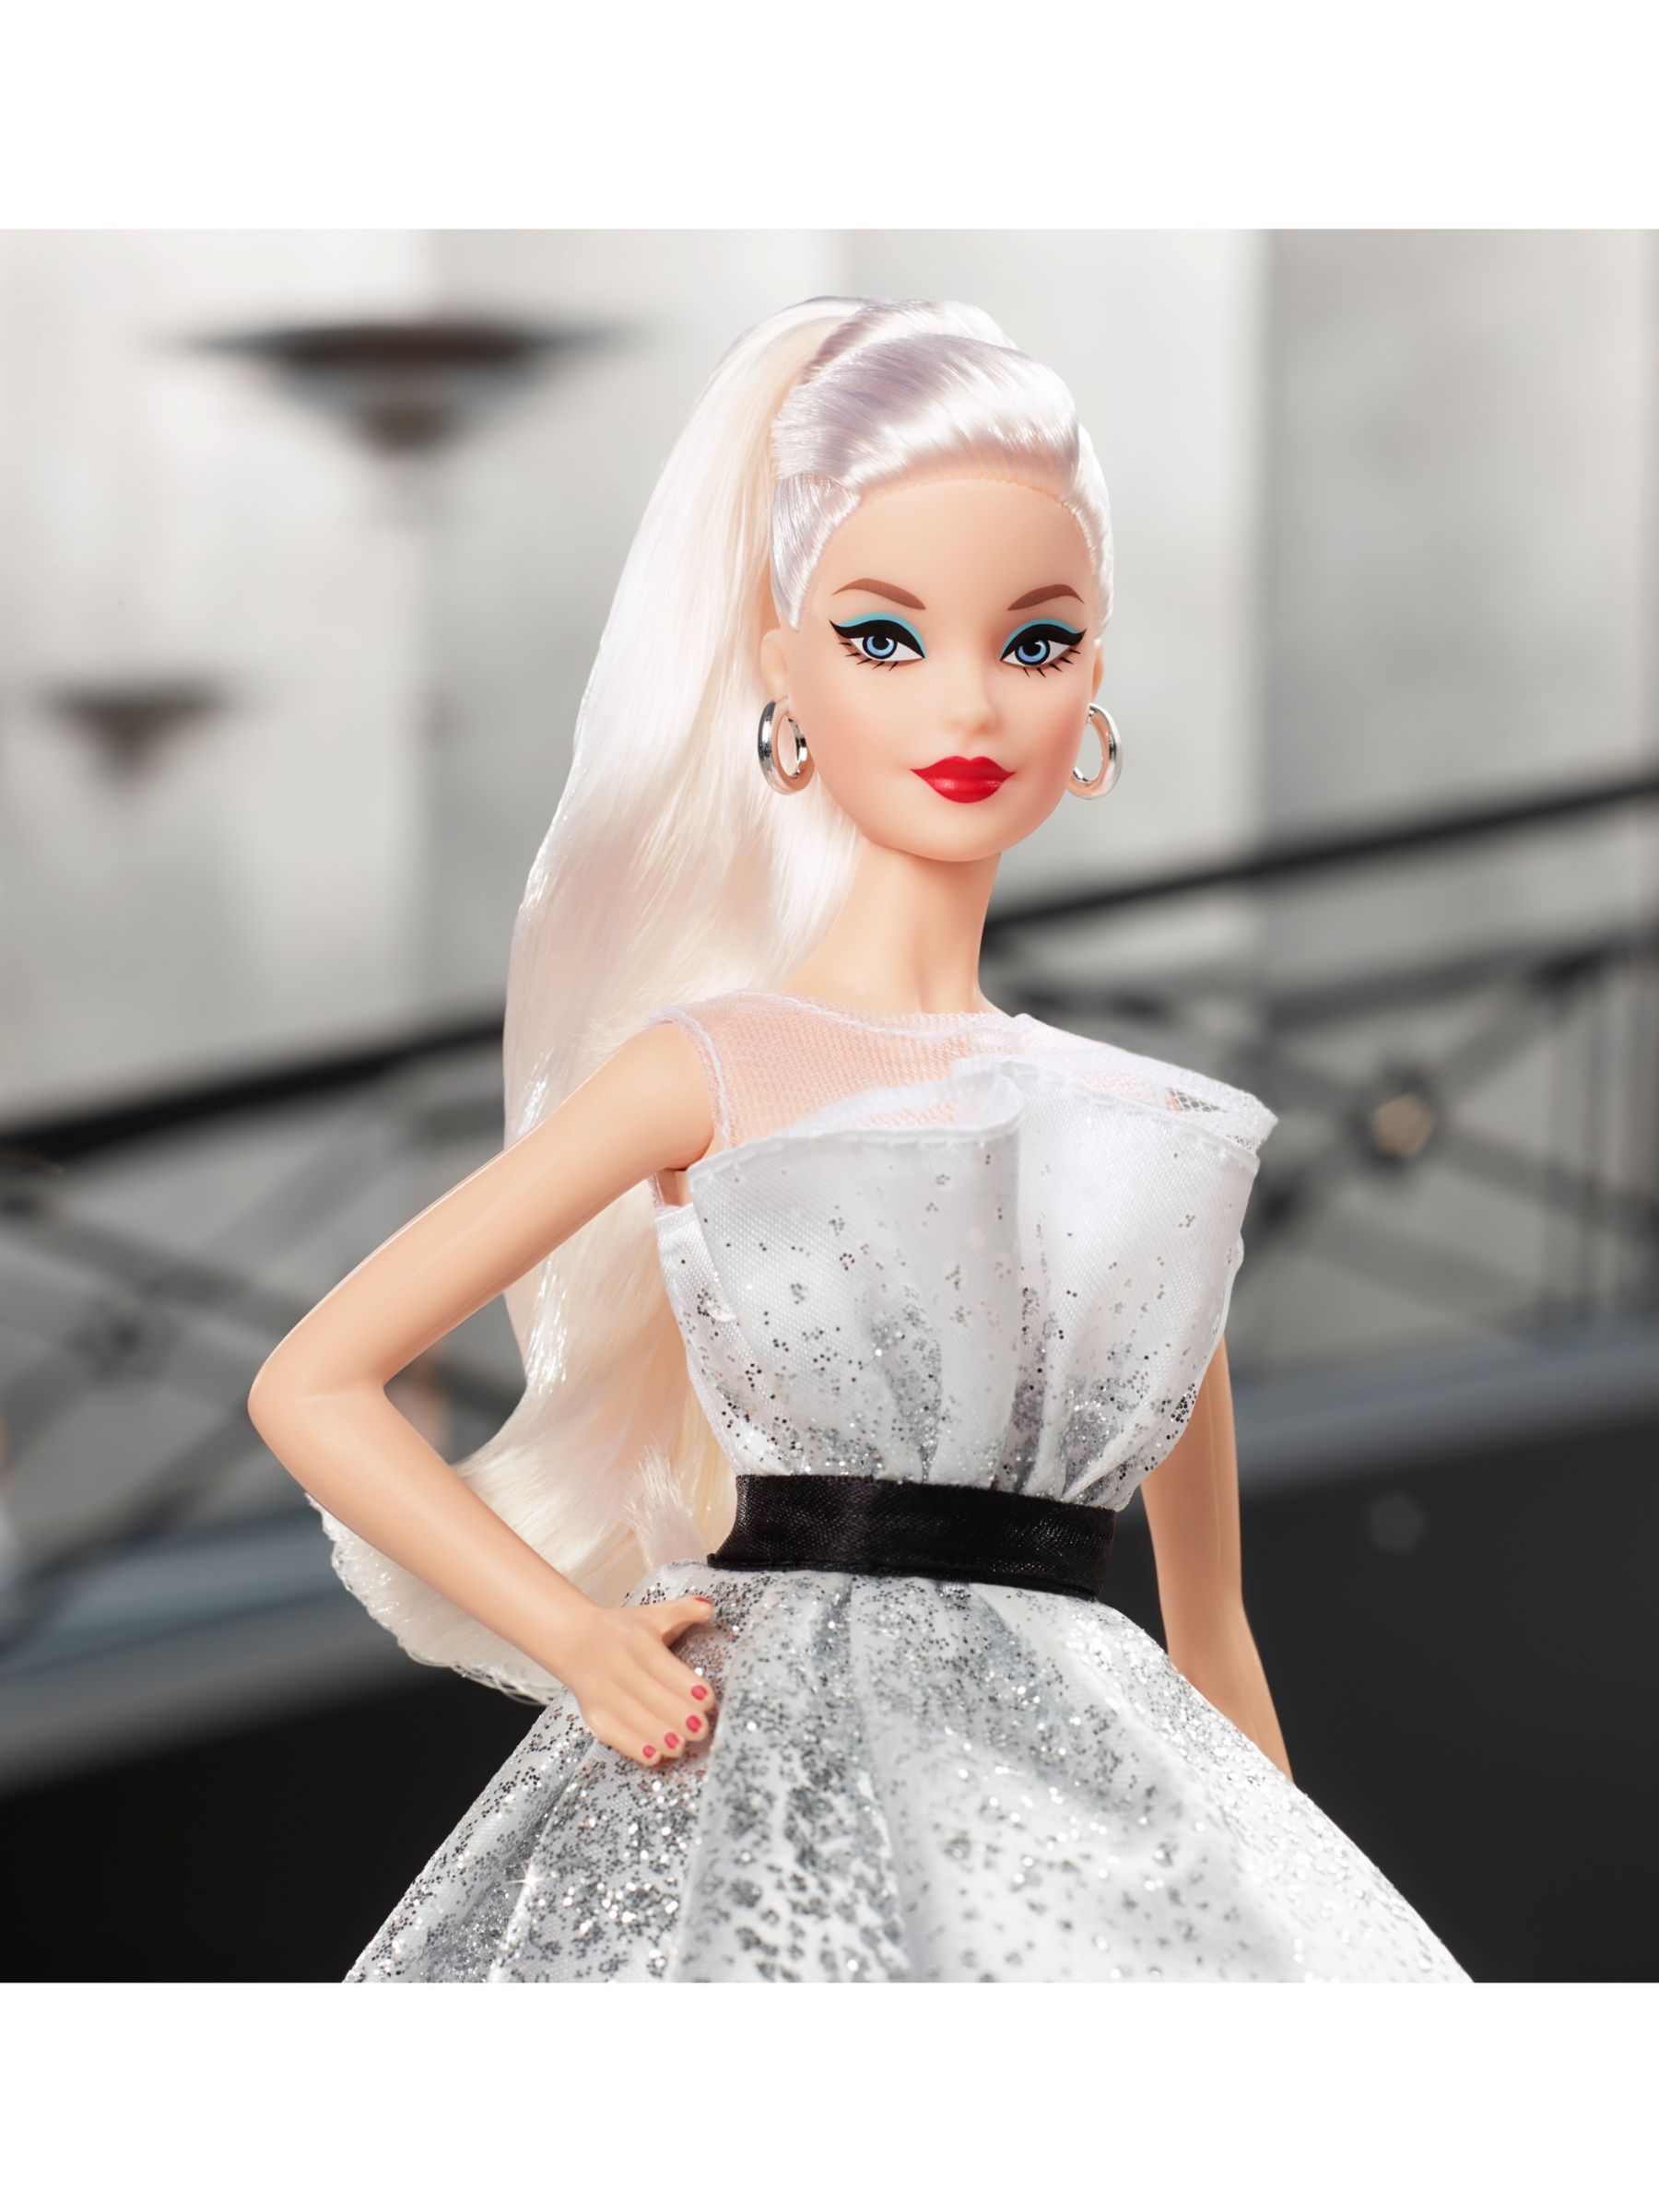 barbie 60 anniversary